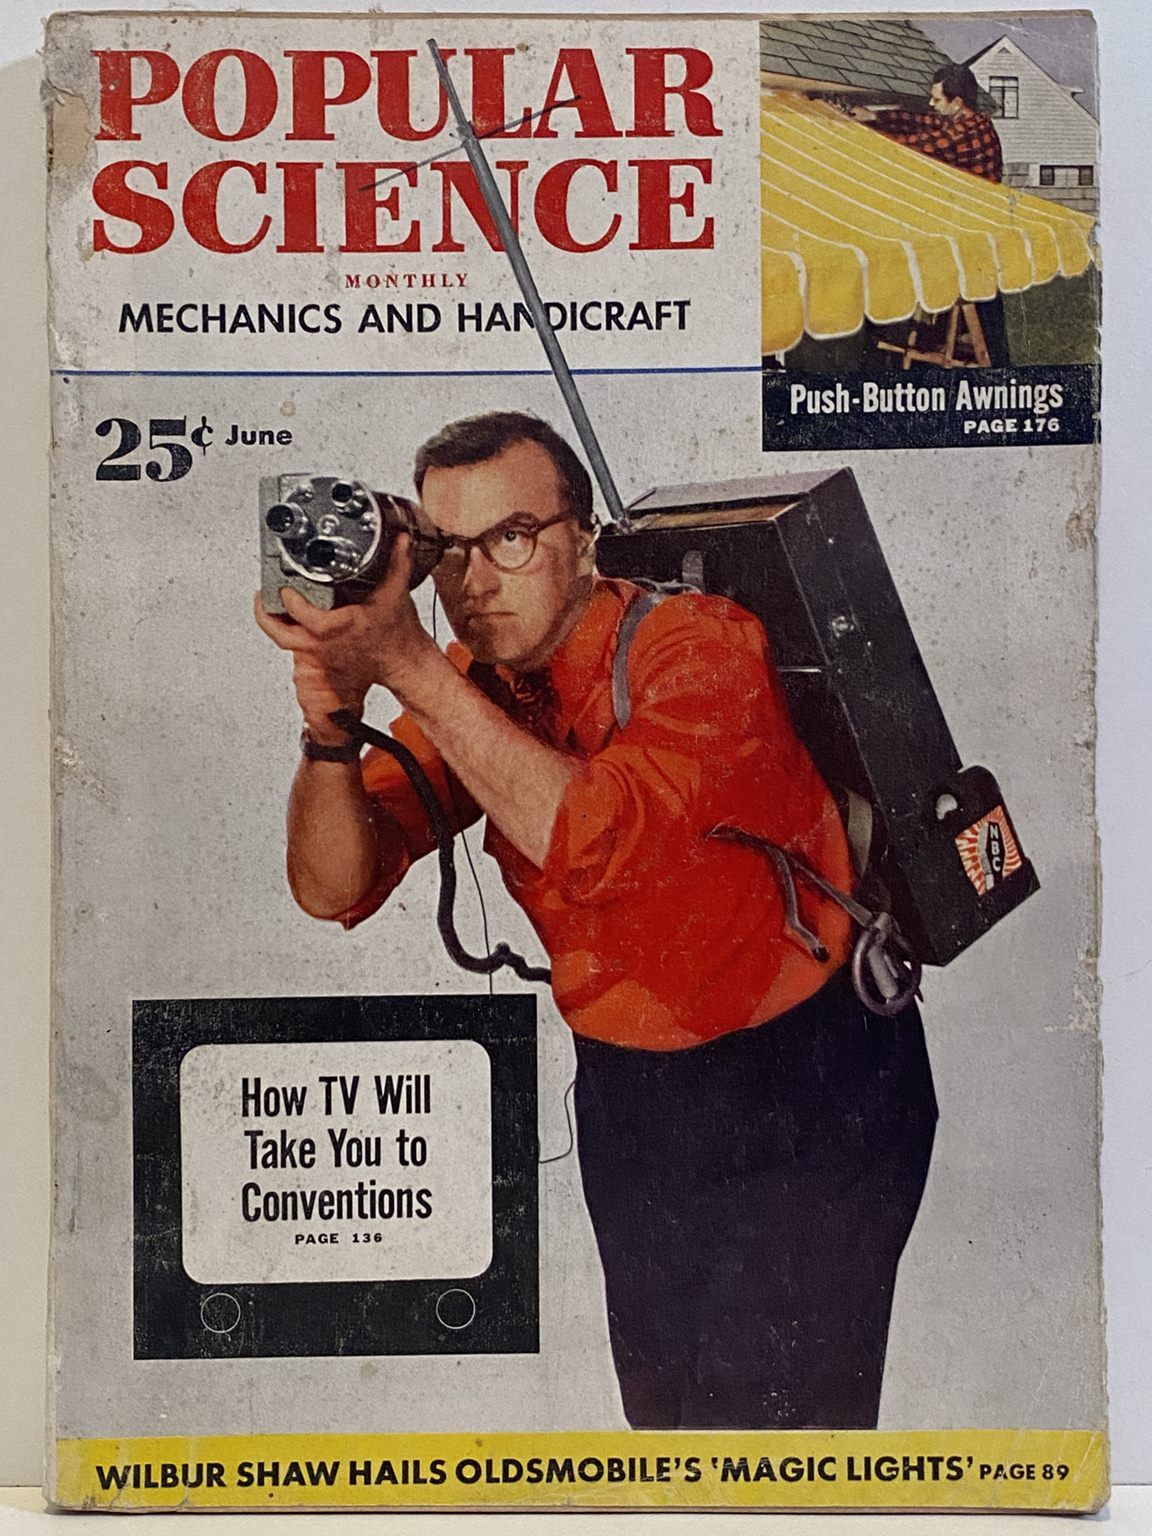 VINTAGE MAGAZINE: Popular Science, Vol. 160, No. 6 - June 1952